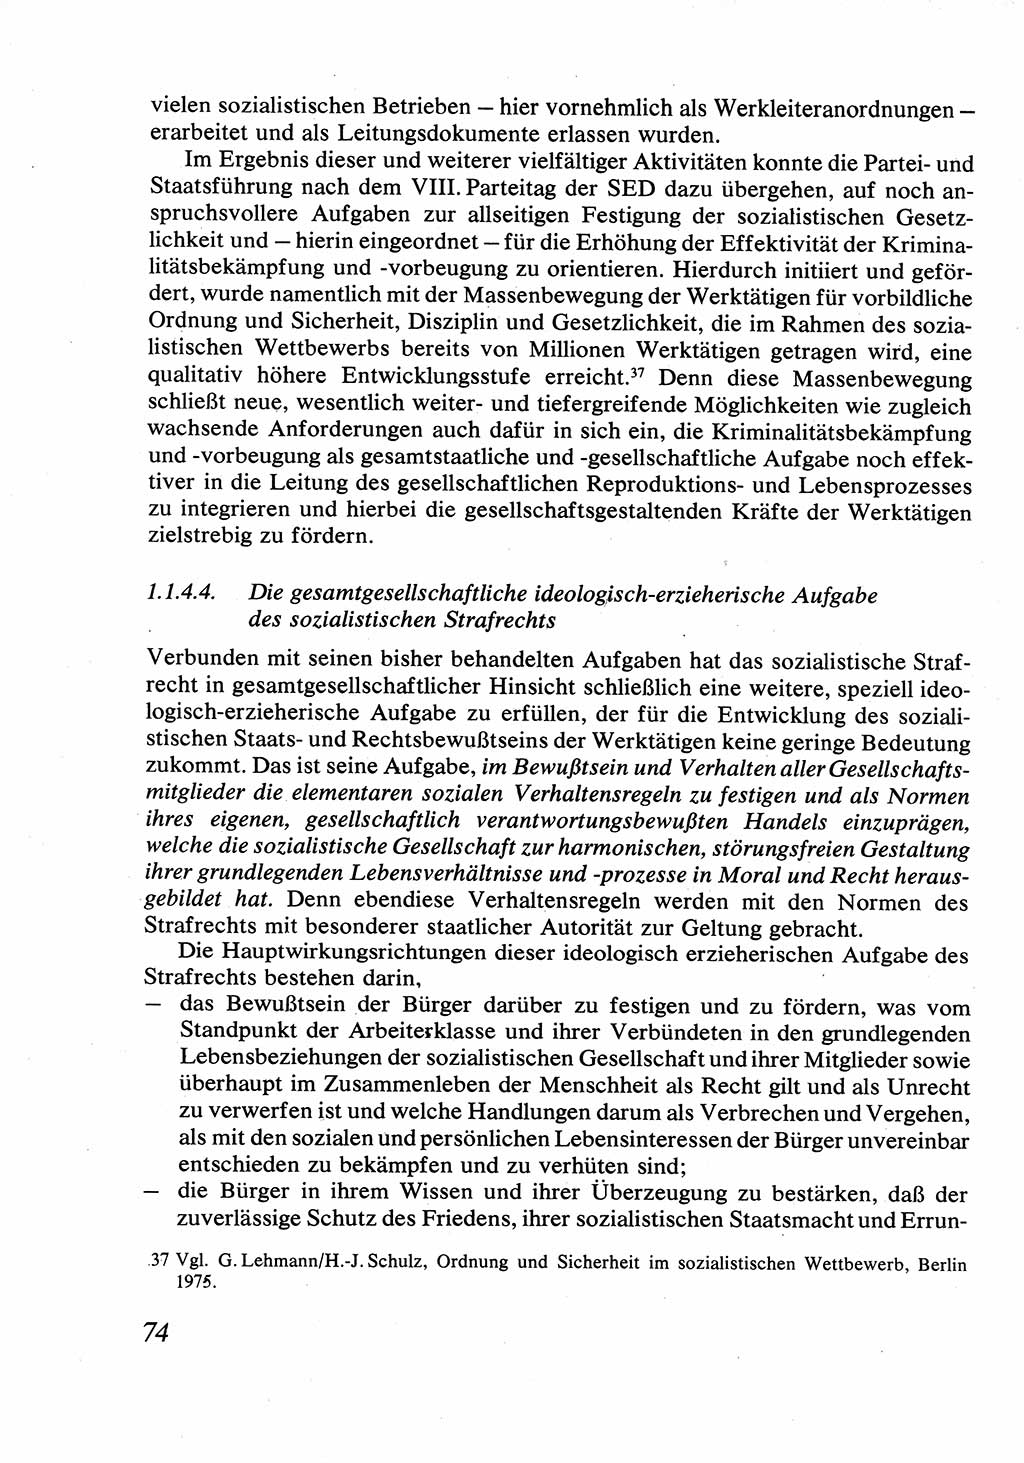 Strafrecht [Deutsche Demokratische Republik (DDR)], Allgemeiner Teil, Lehrbuch 1976, Seite 74 (Strafr. DDR AT Lb. 1976, S. 74)